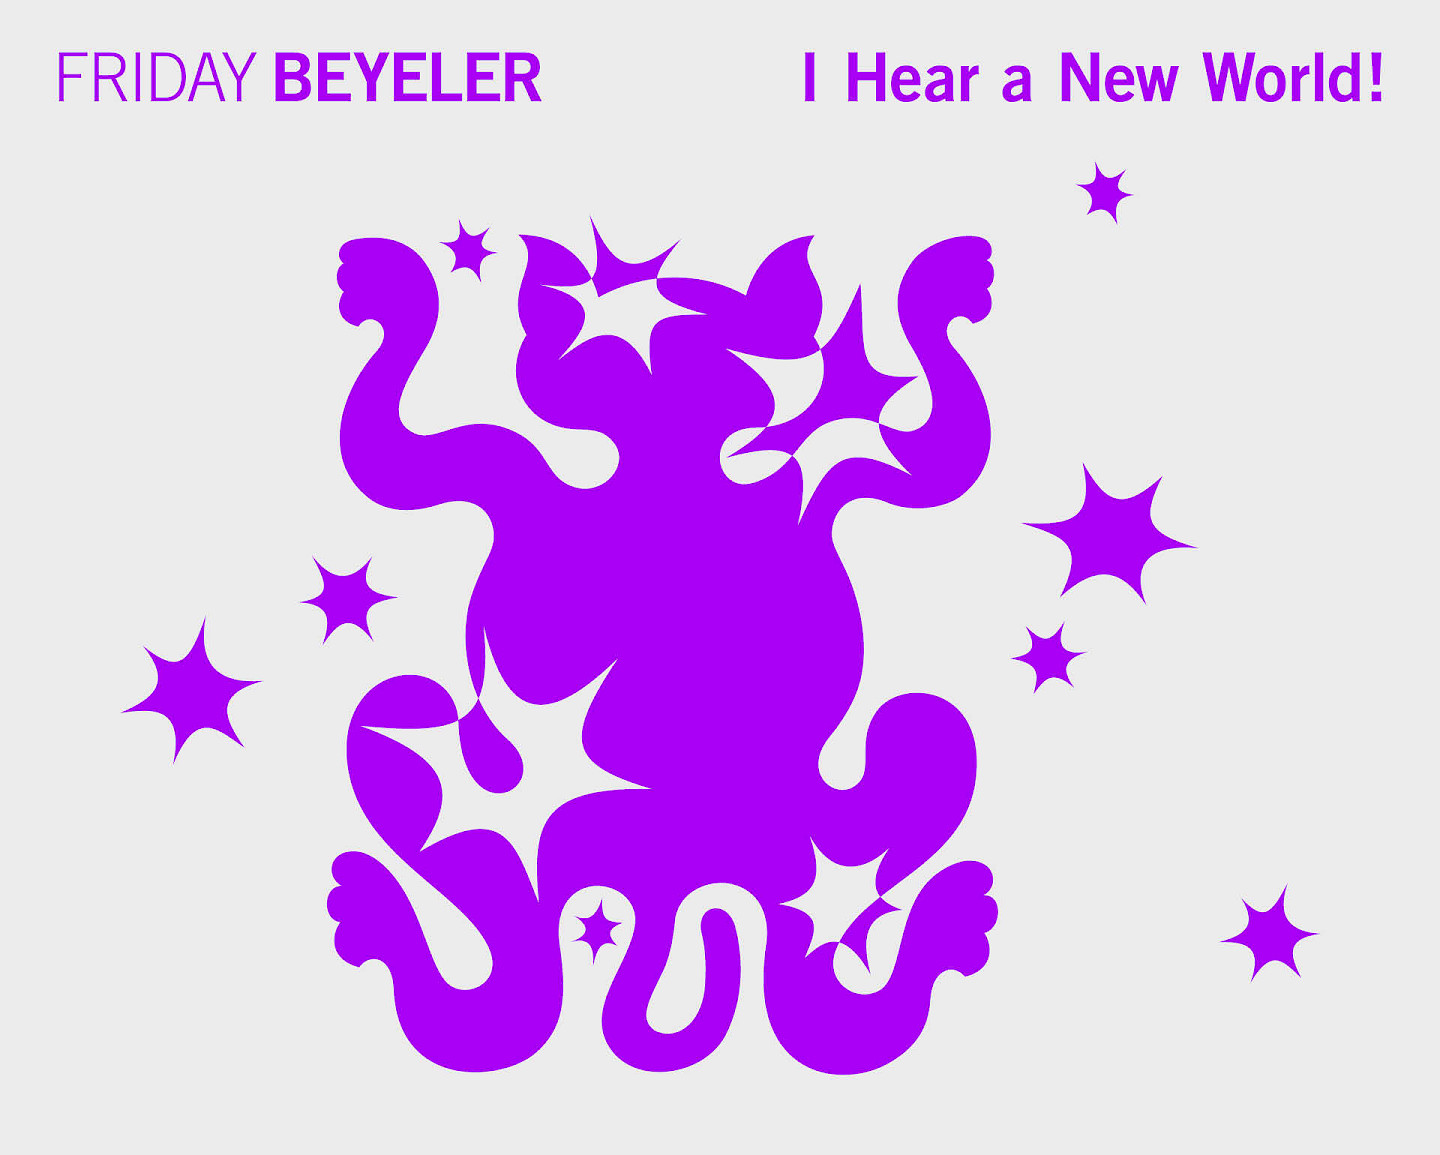 Friday Beyeler - Every End Brings New Beginnings